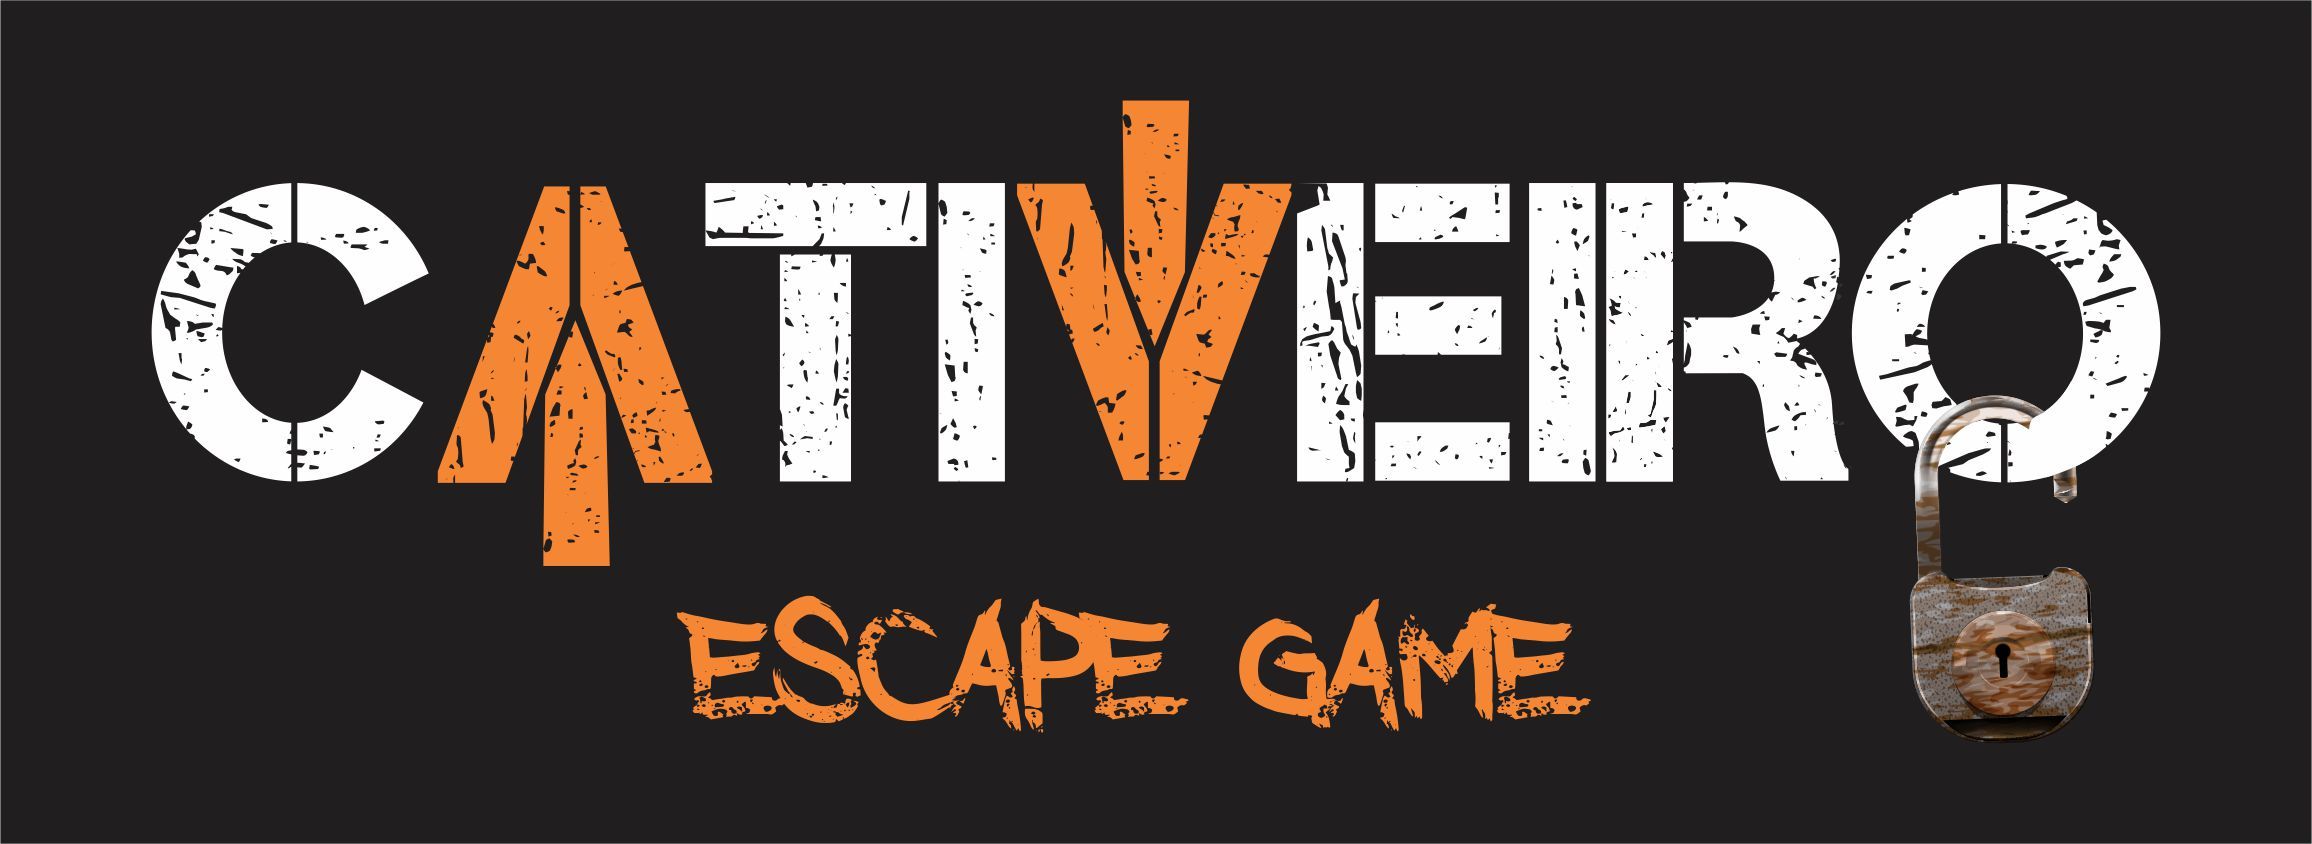 12 Jogos Escape Room Online para tentarem escapar sem sair de